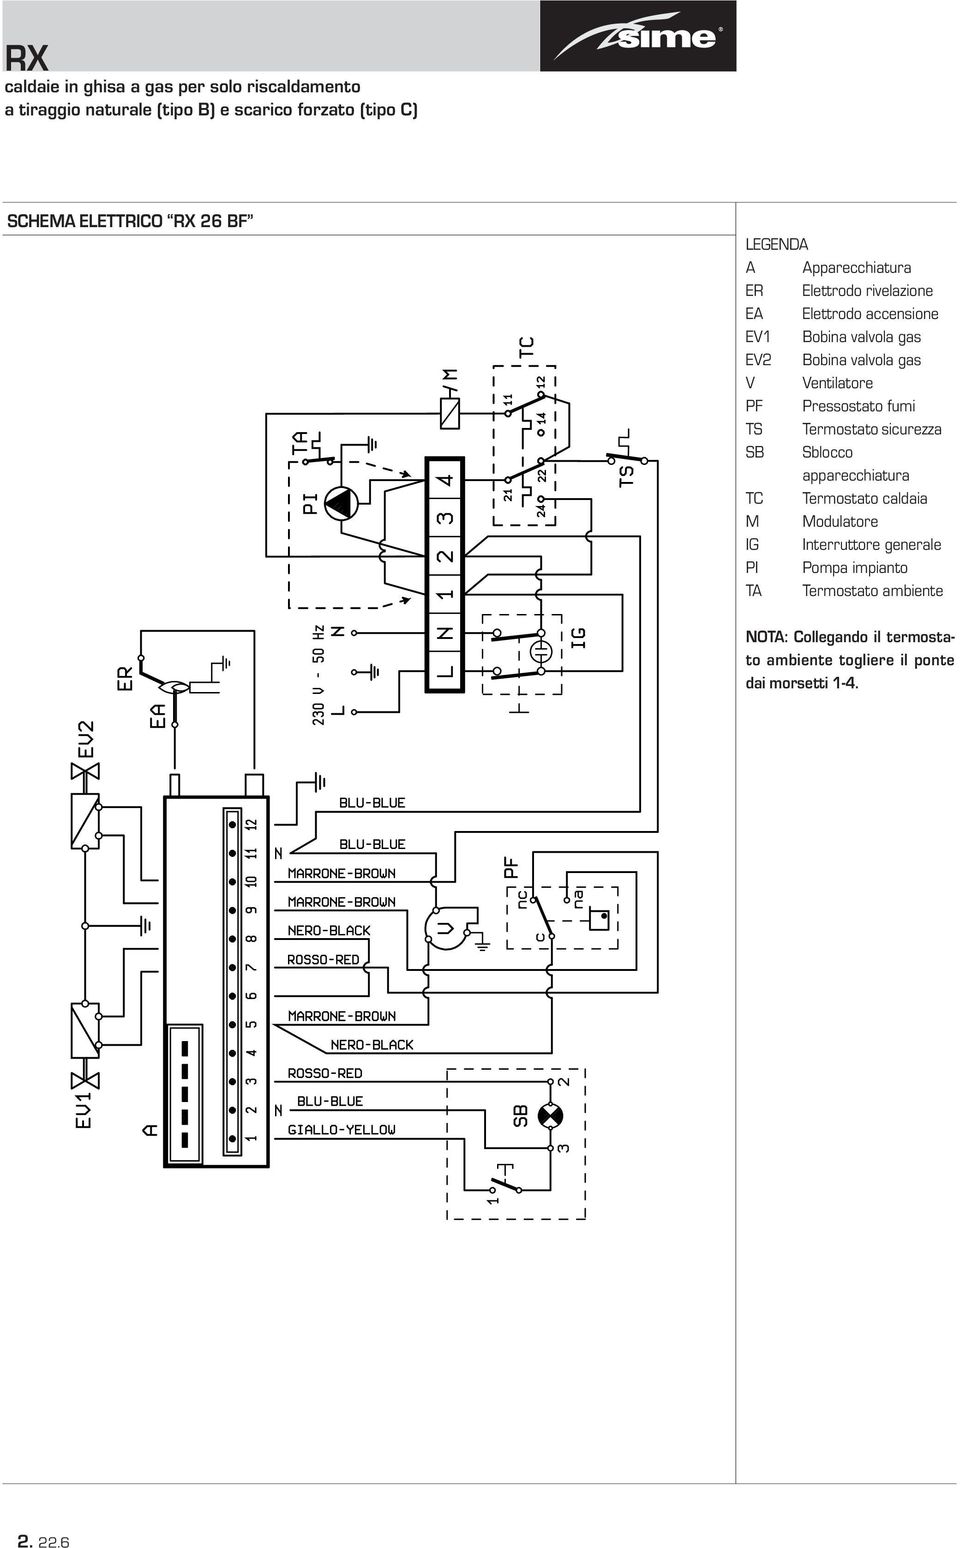 SB Sblocco apparecchiatura TC Termostato caldaia M Modulatore IG Interruttore generale PI Pompa